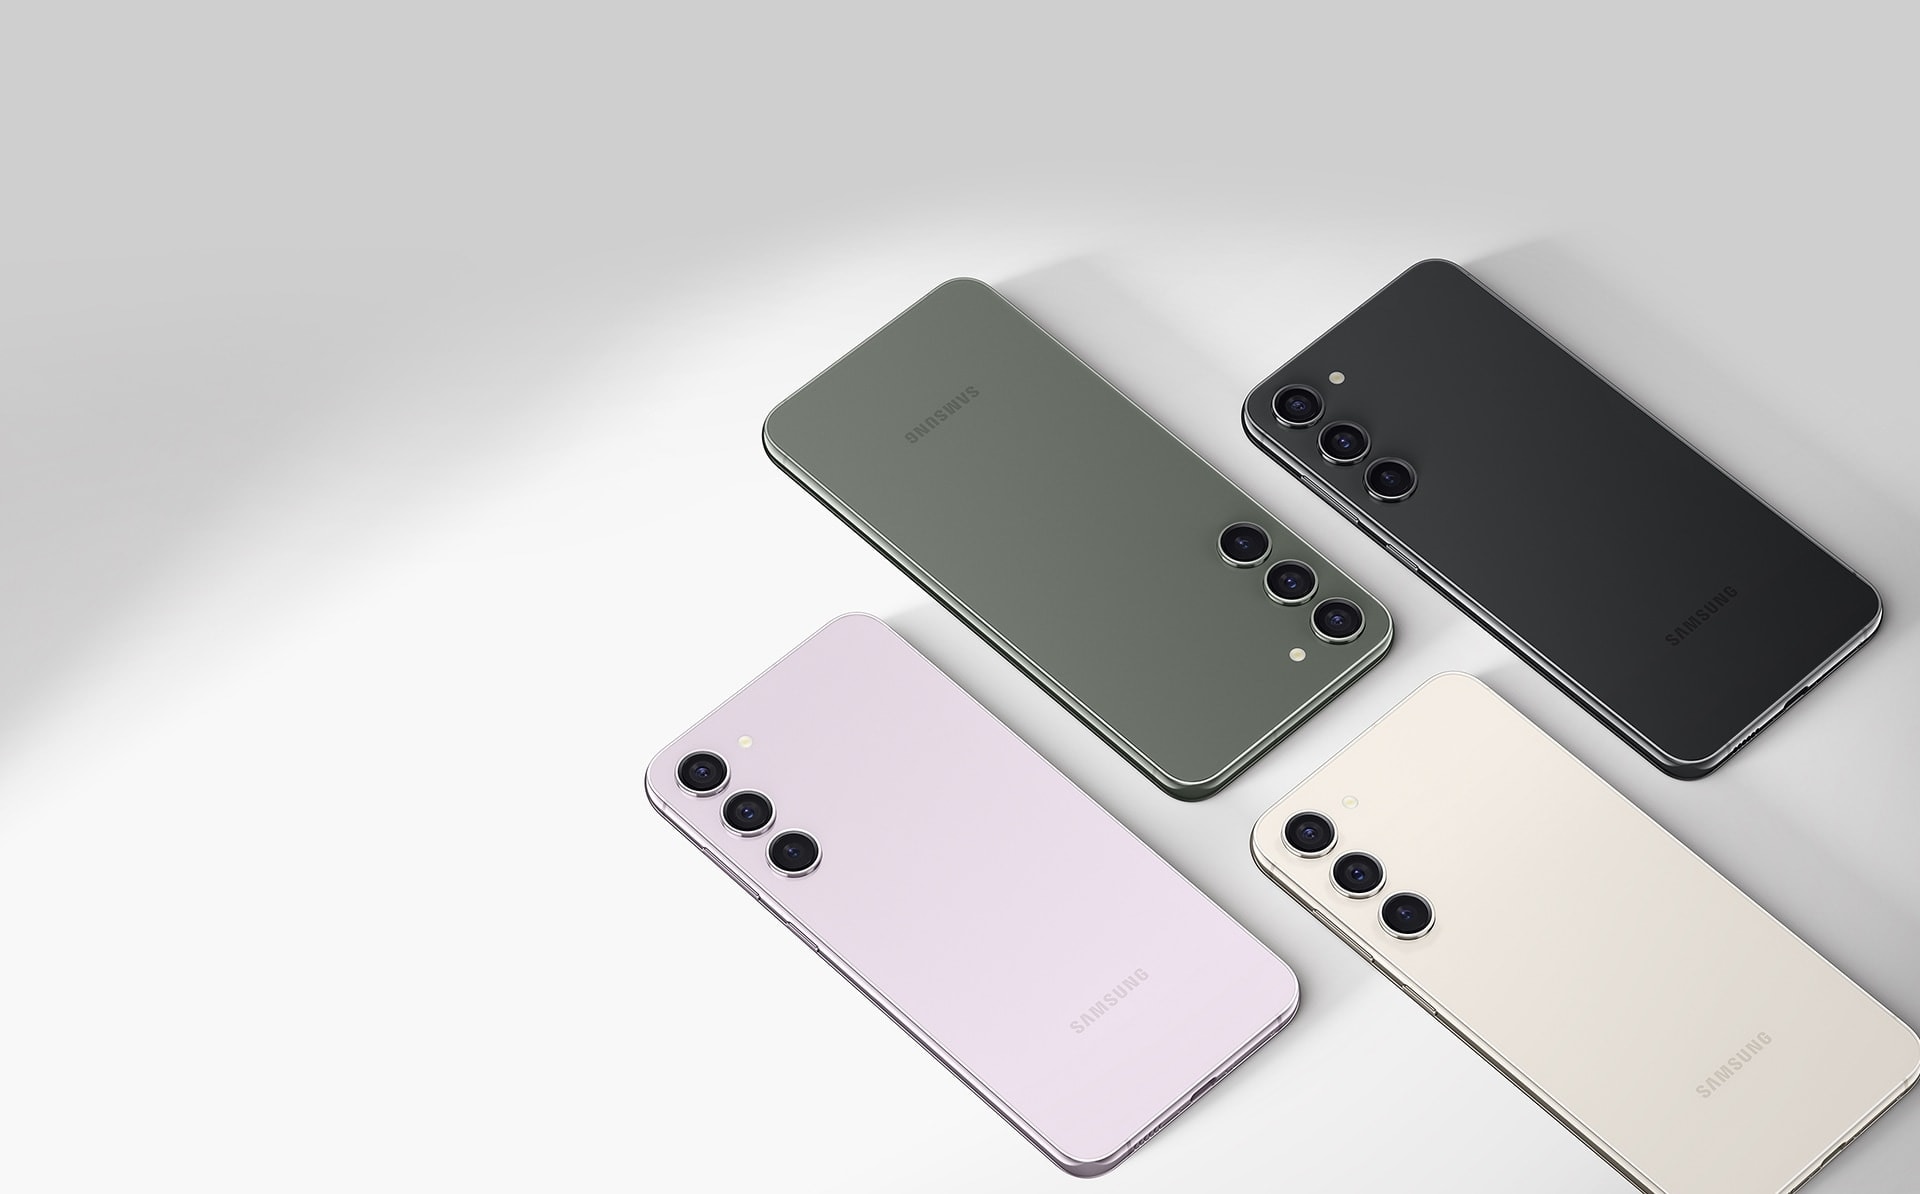 ภาพของโทรศัพท์ Galaxy S23 plus สี่เครื่องที่วางอยู่บนพื้นราบ ซึ่งแต่ละเครื่องนั้นมีสีแตกต่างกันไป ได้แก่ Lavender, Green, Cream และ Phantom Black